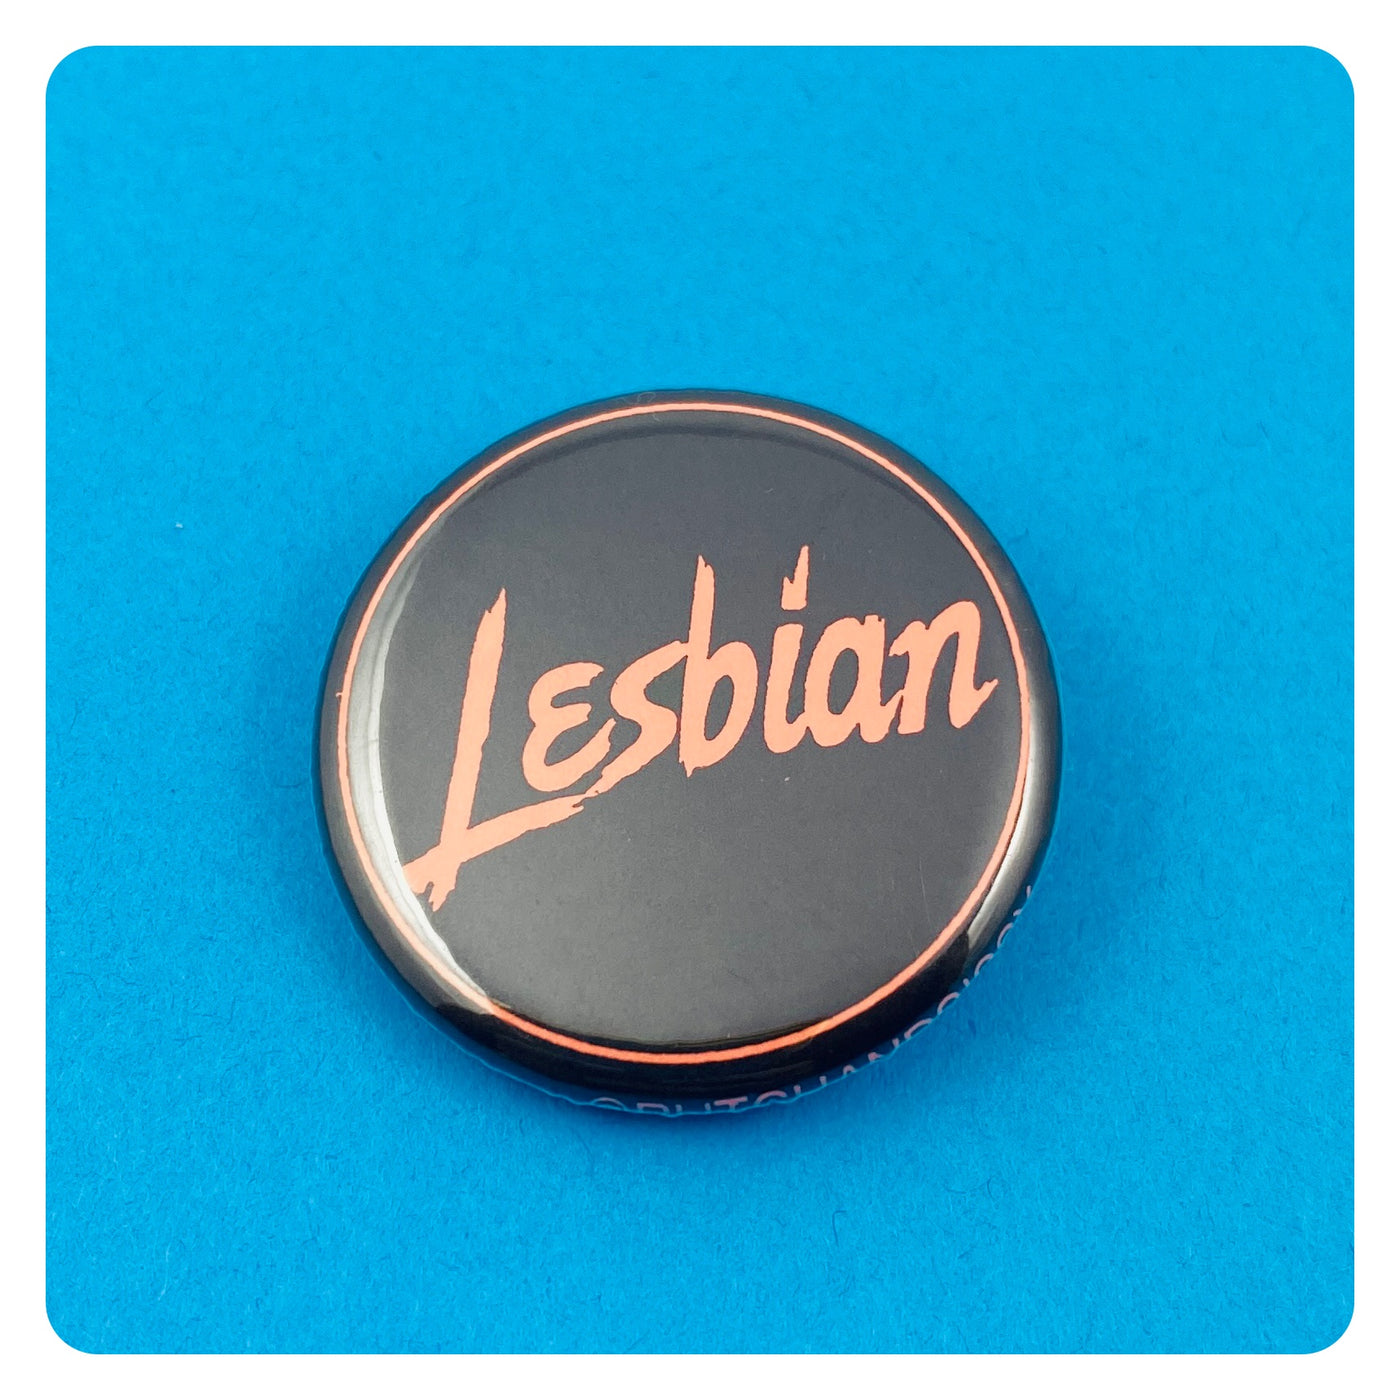 Lesbian Pinback Button